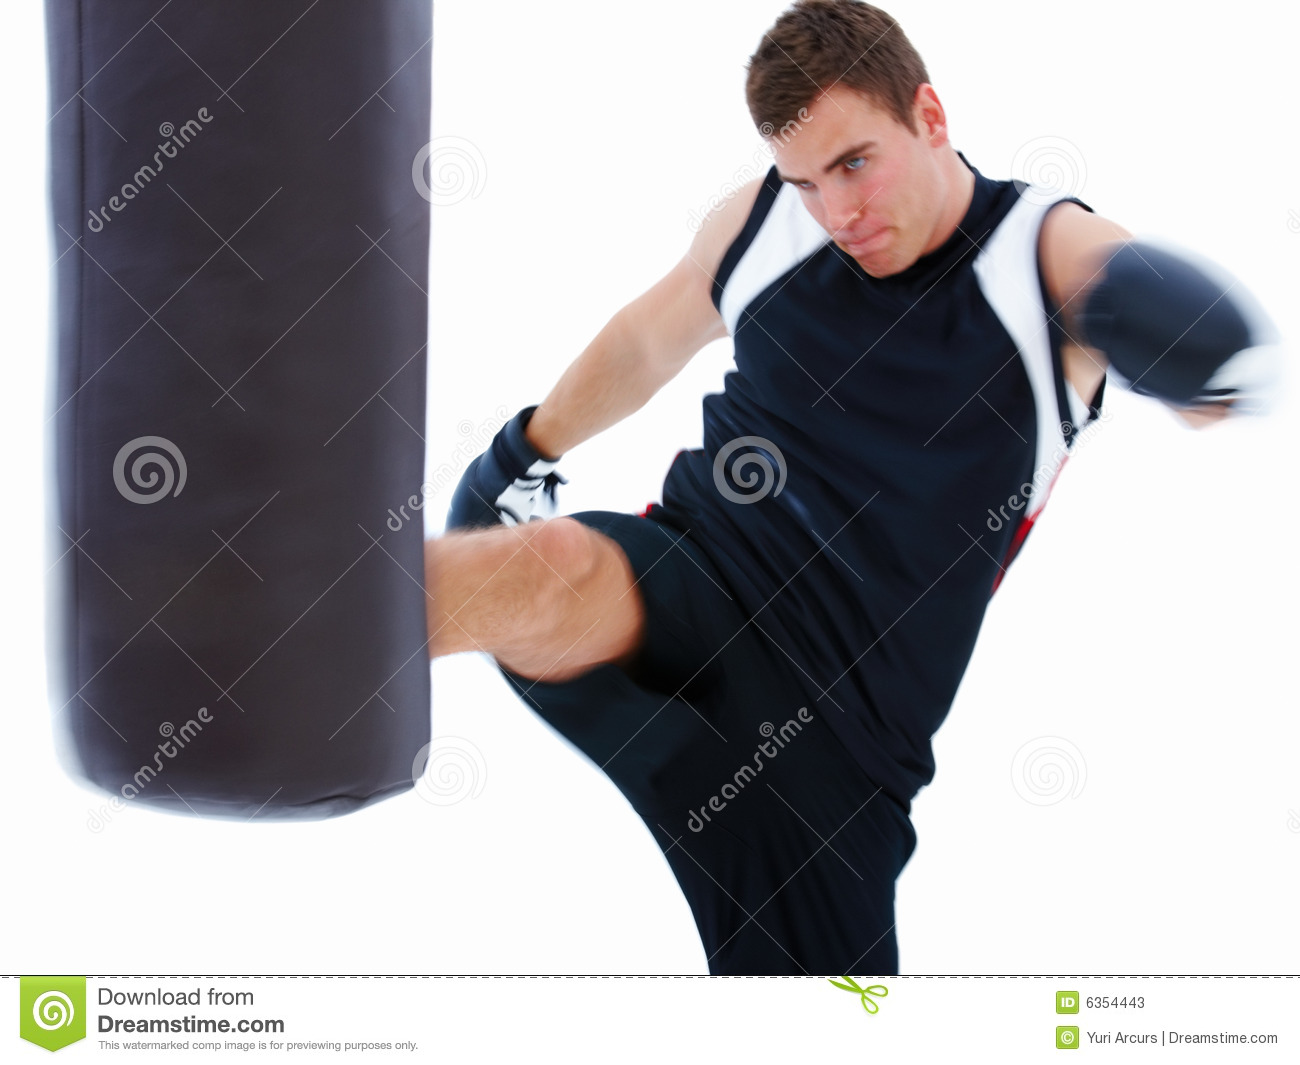 Stock Photos  Man Kicking Punching Bag Isolated On White B  Image    